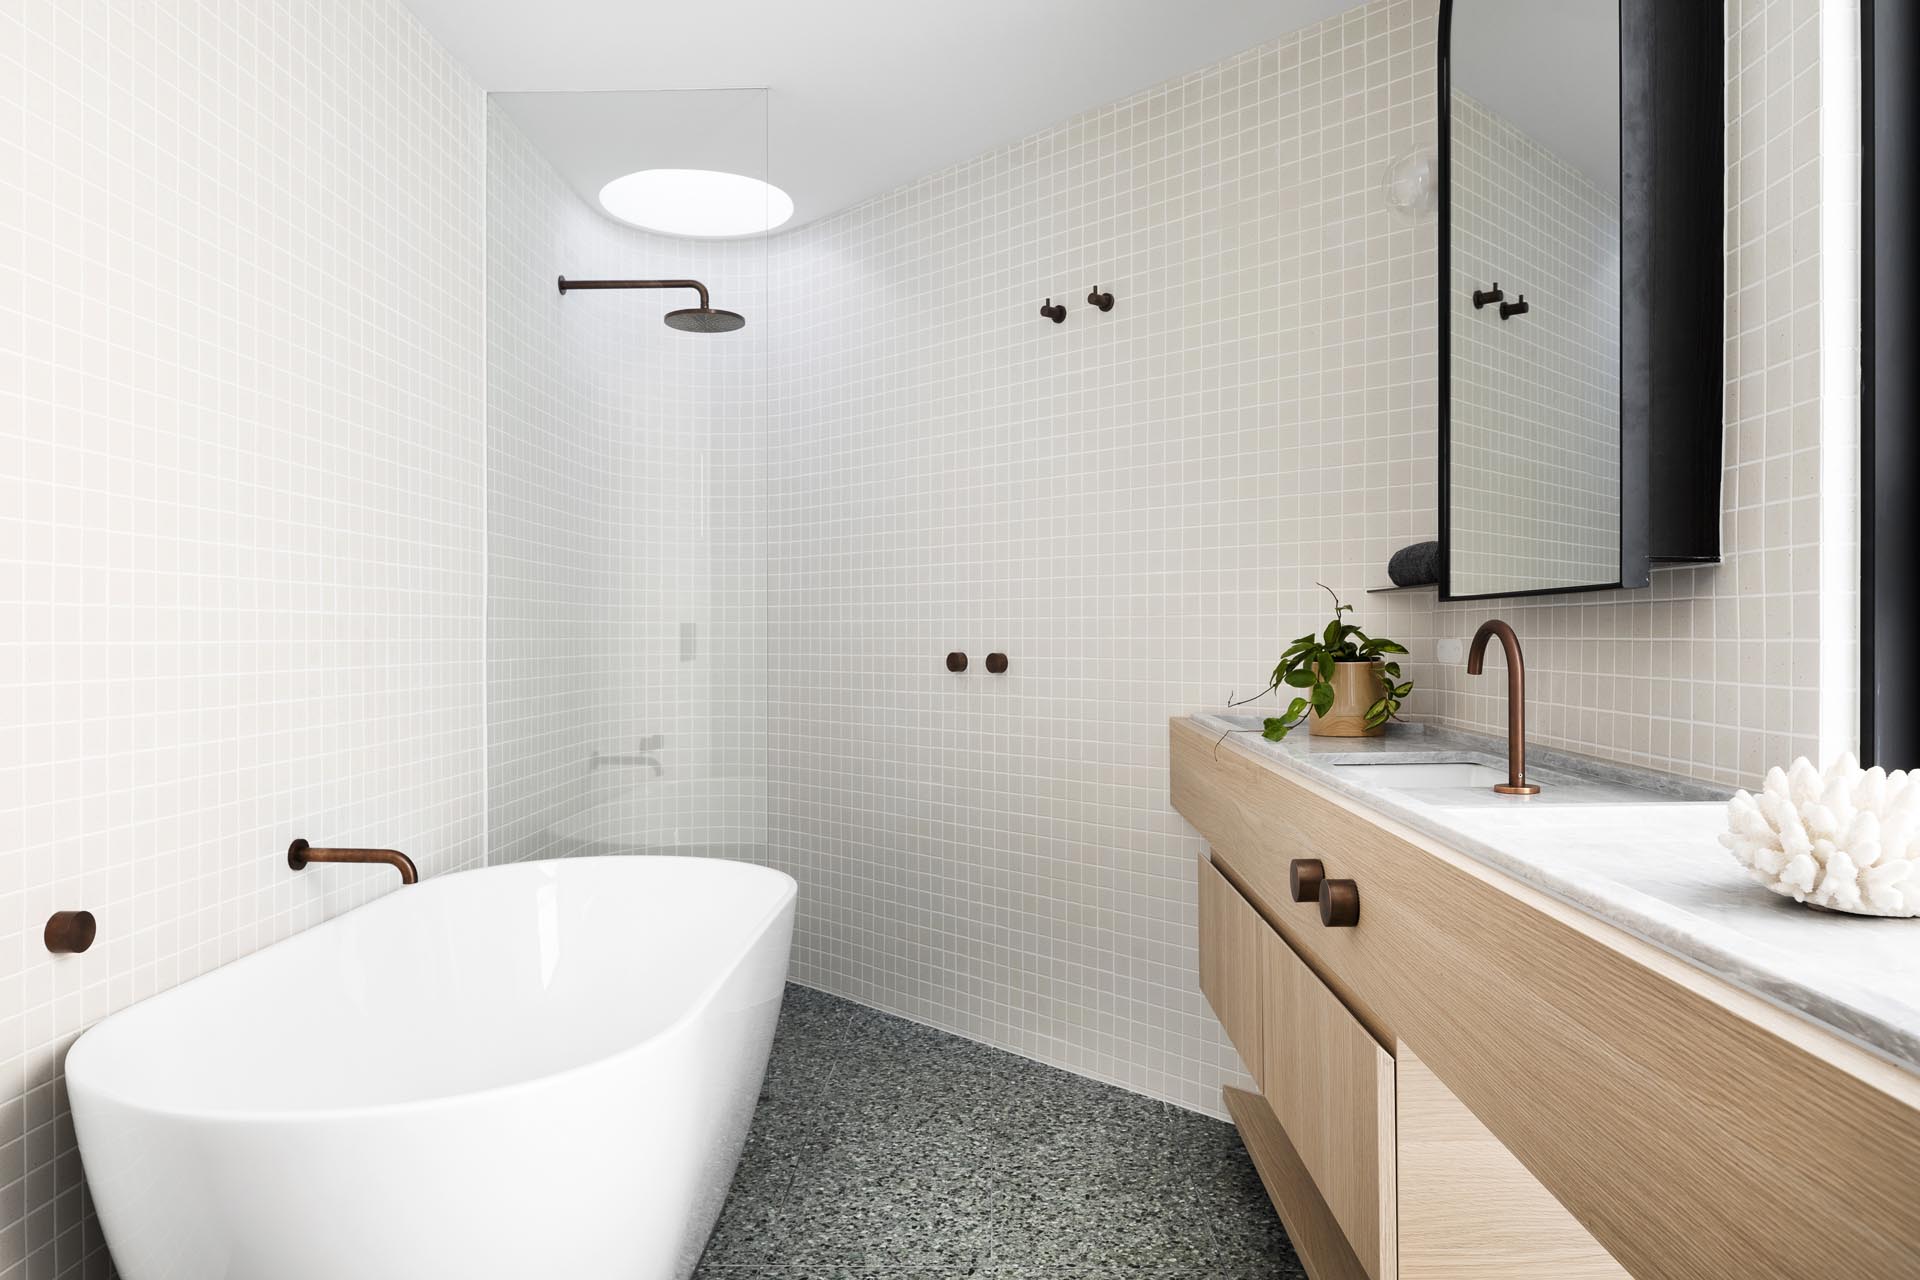 Современная ванная комната с деревянной раковиной и изогнутой стенкой с душем.